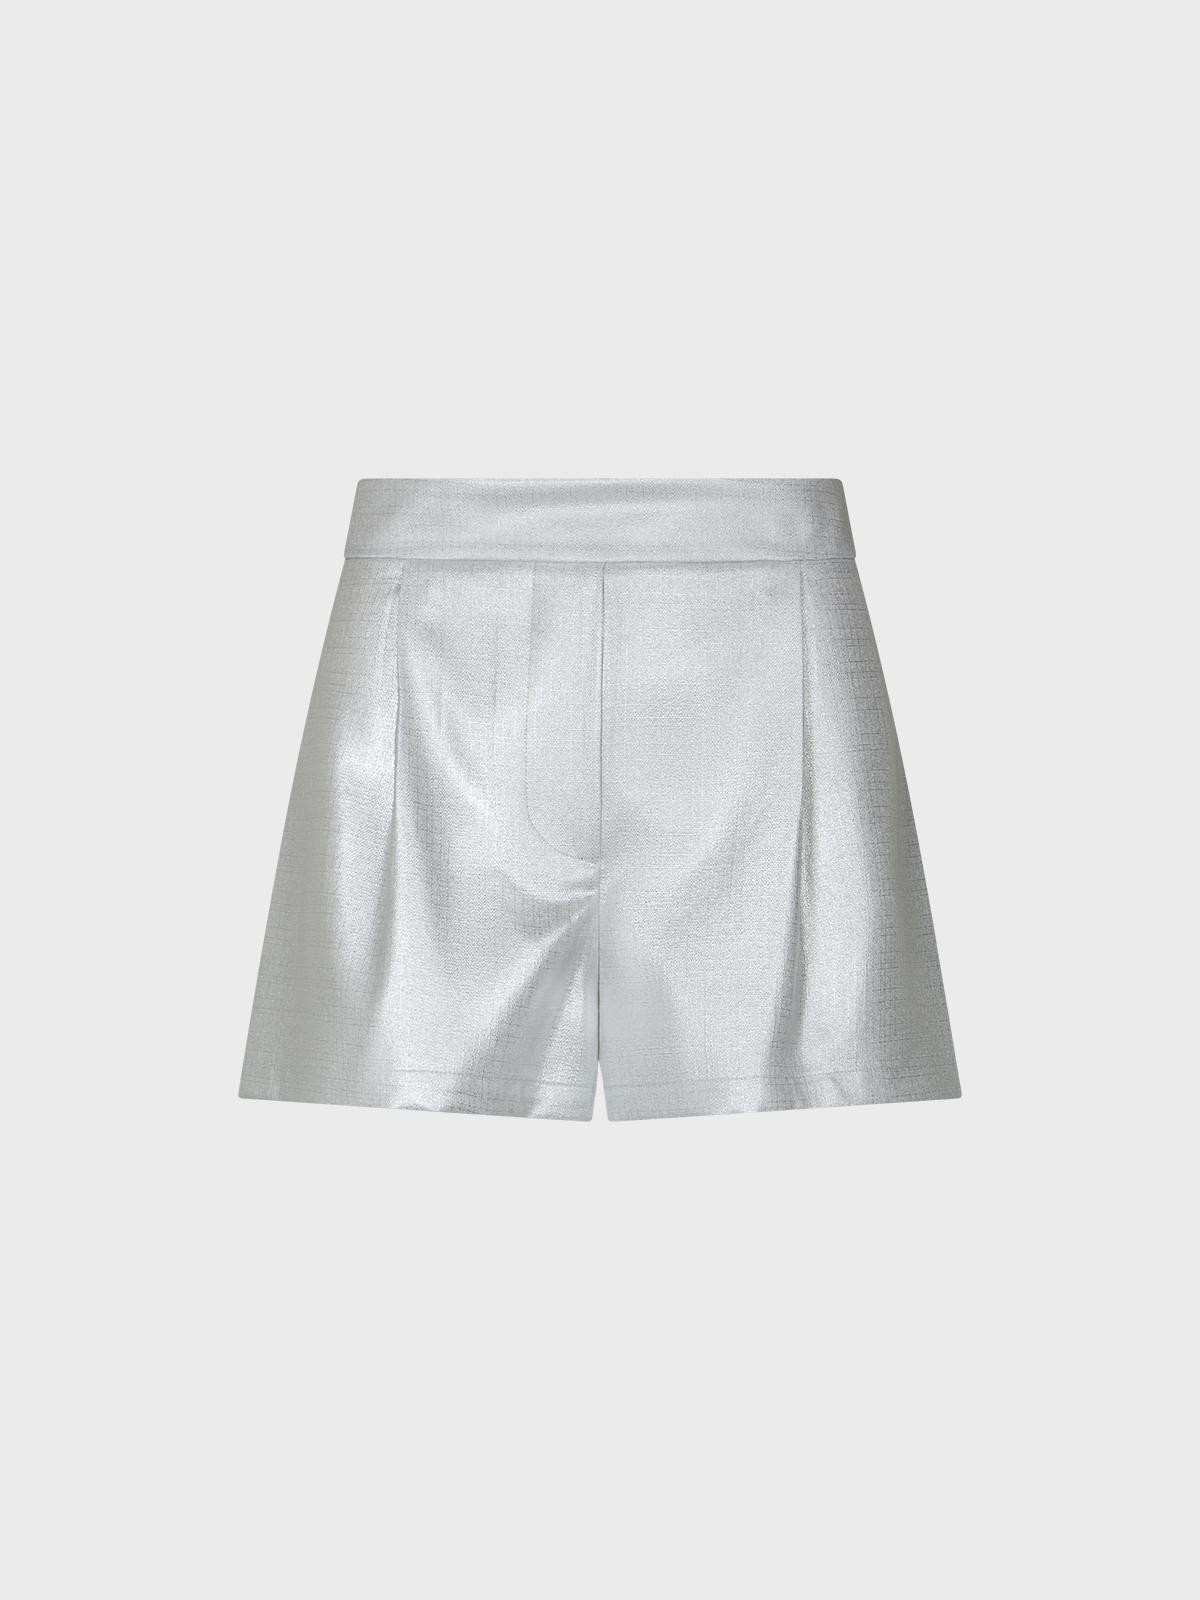 Pantalone silver foil